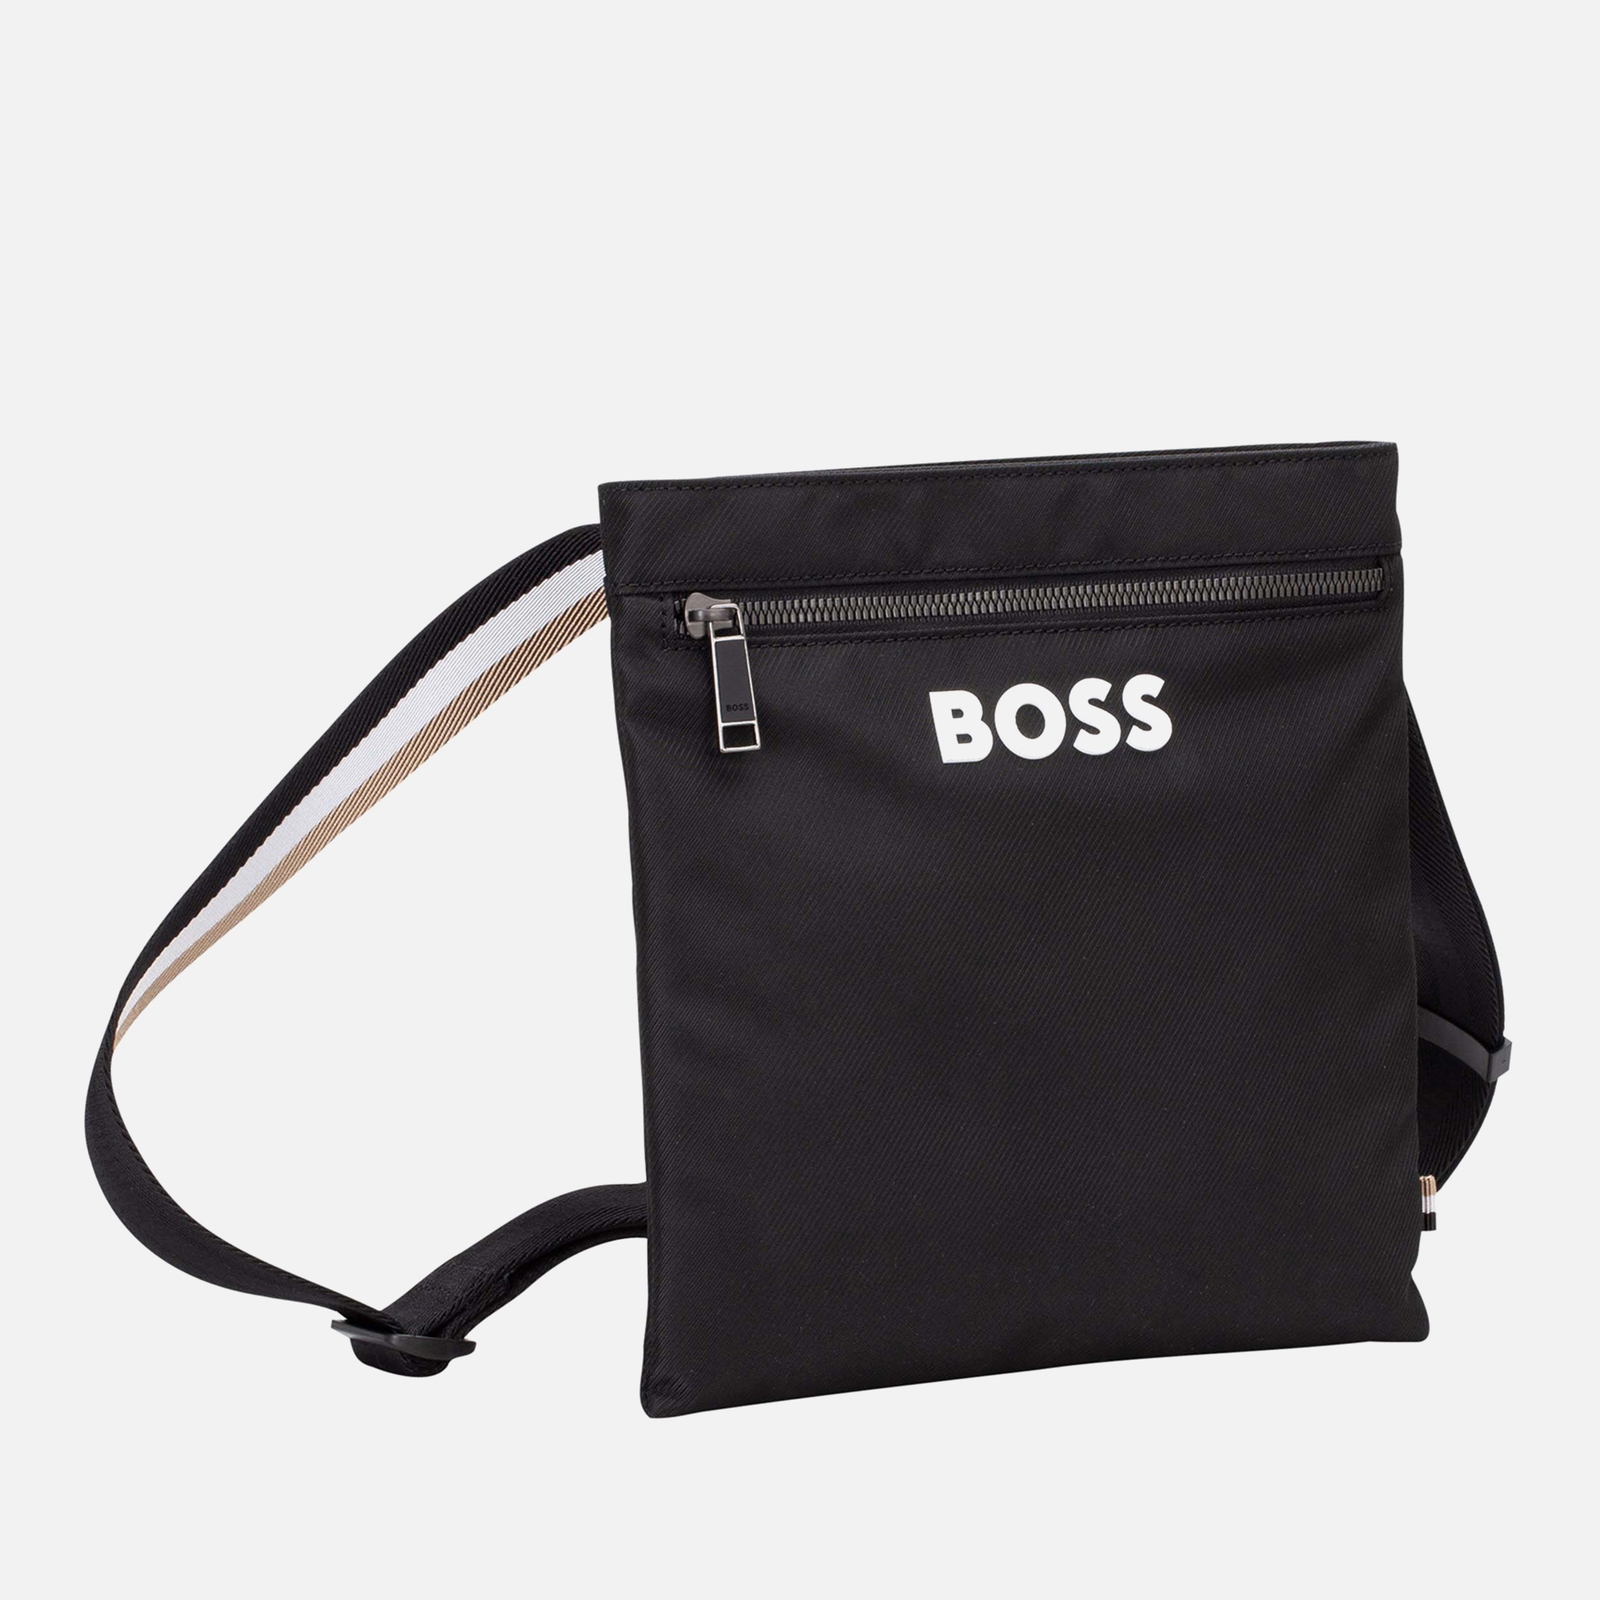 BOSS Men's Catch Envelope Cross Body Bag - Black